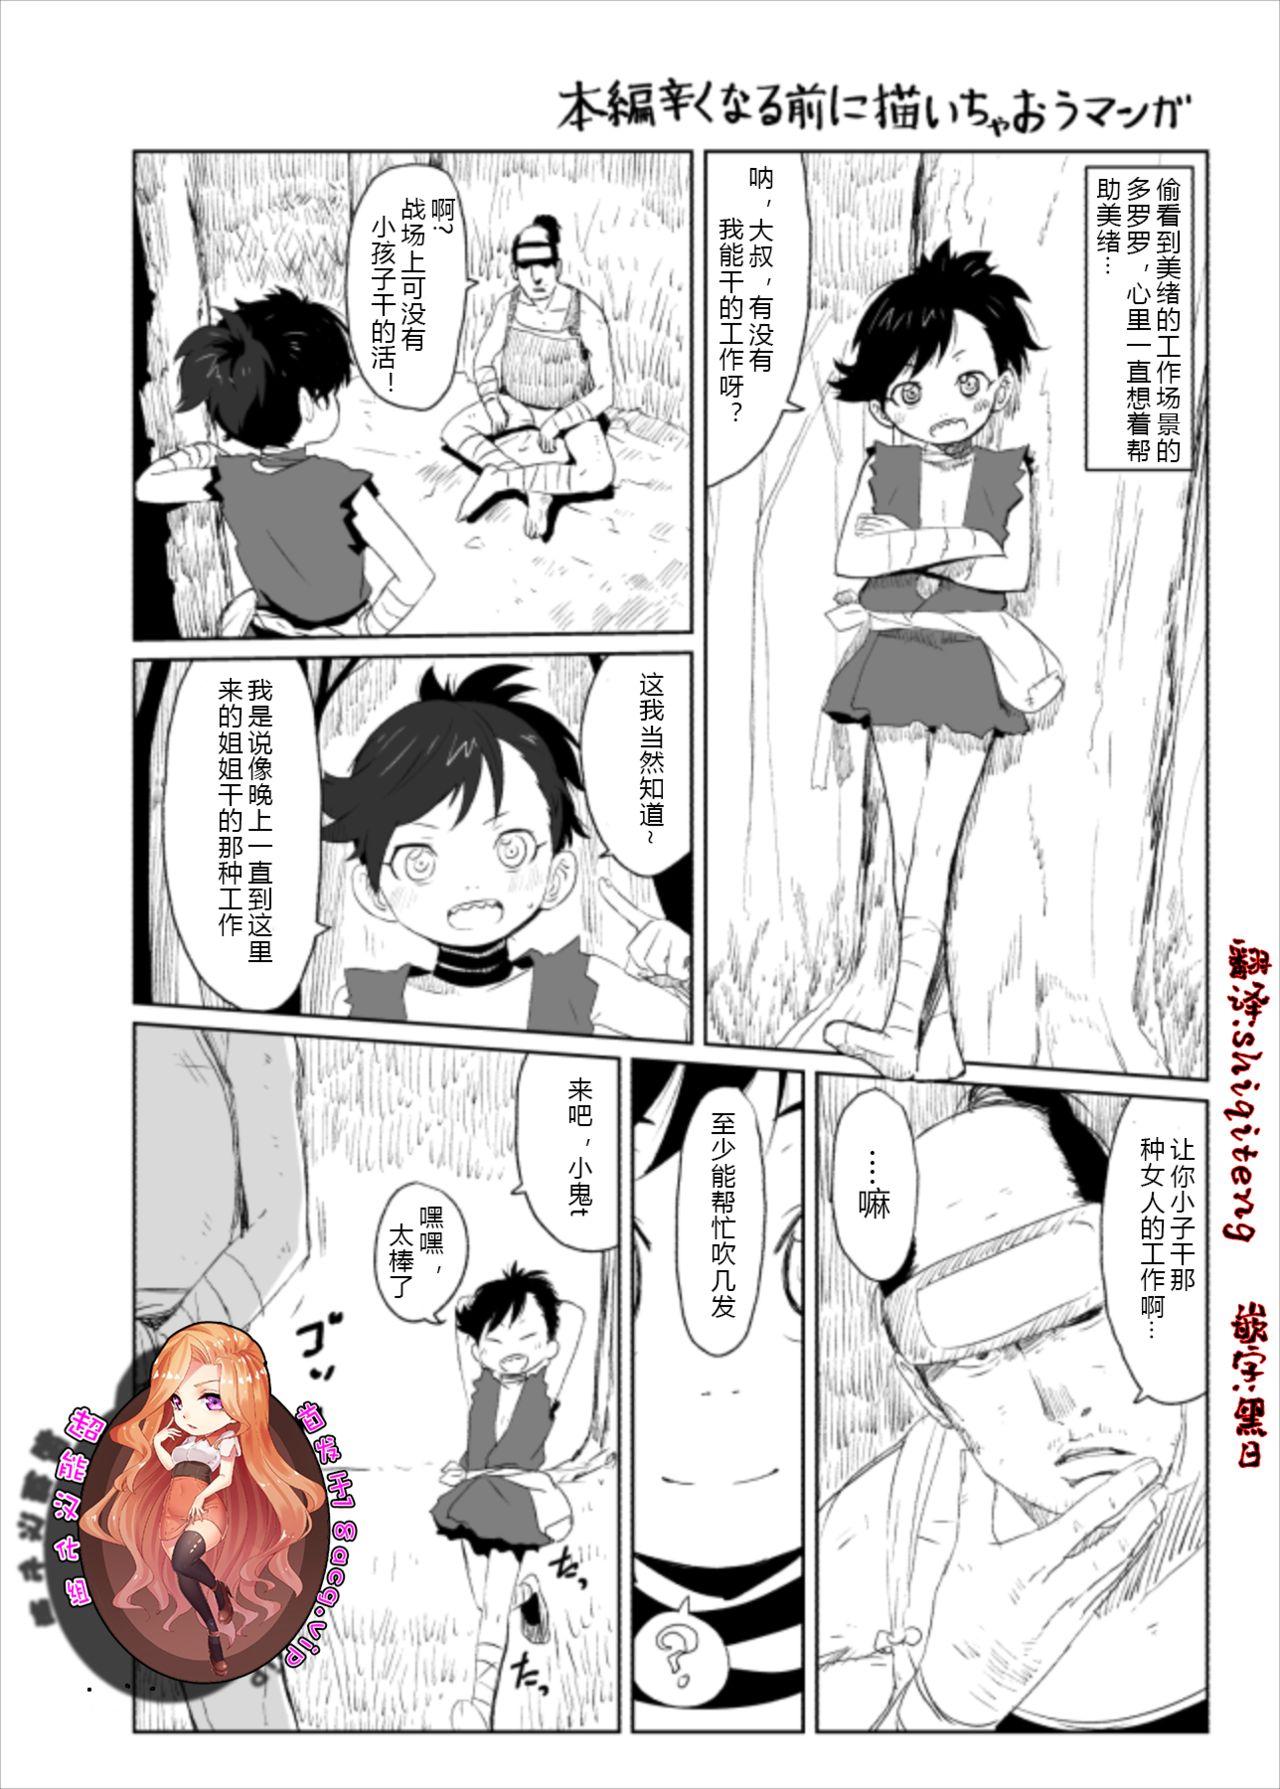 Cock Suckers Dororo Rakugaki Echi Manga - Dororo Best Blow Job - Picture 1